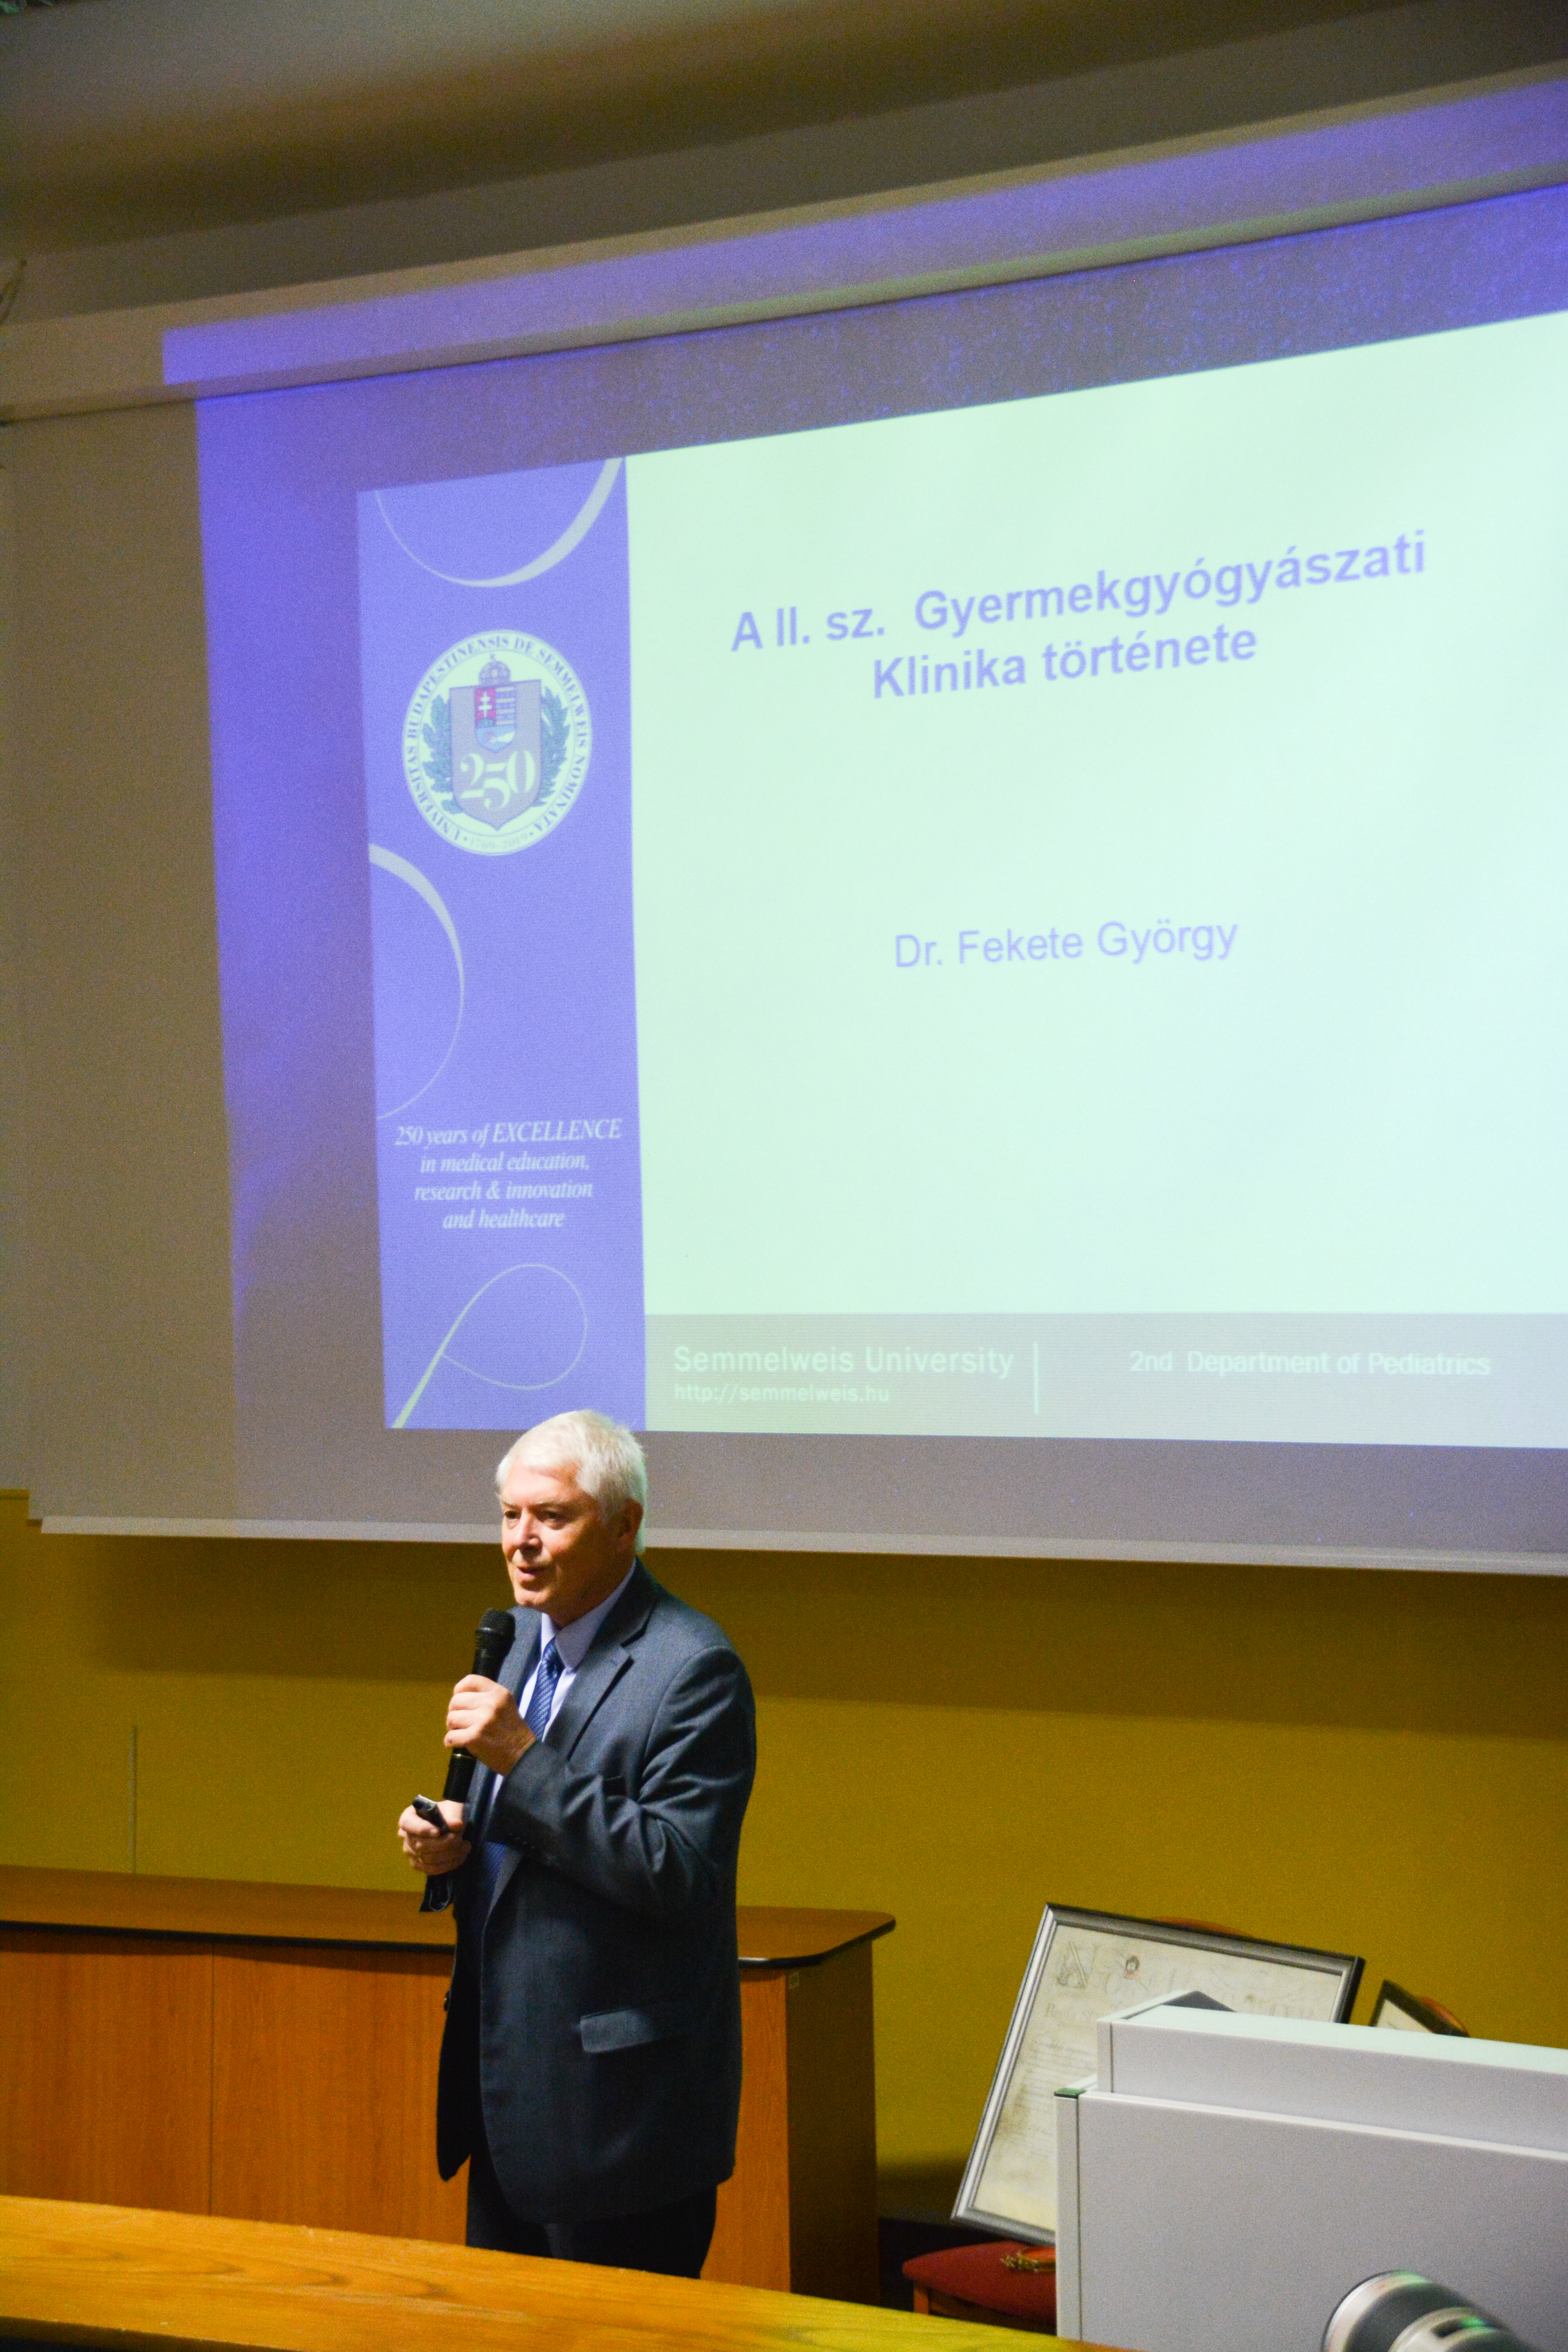 Prof.Dr. Fekete György, Professor Emeritus, II. sz. Gyermekgyógyászati Klinika